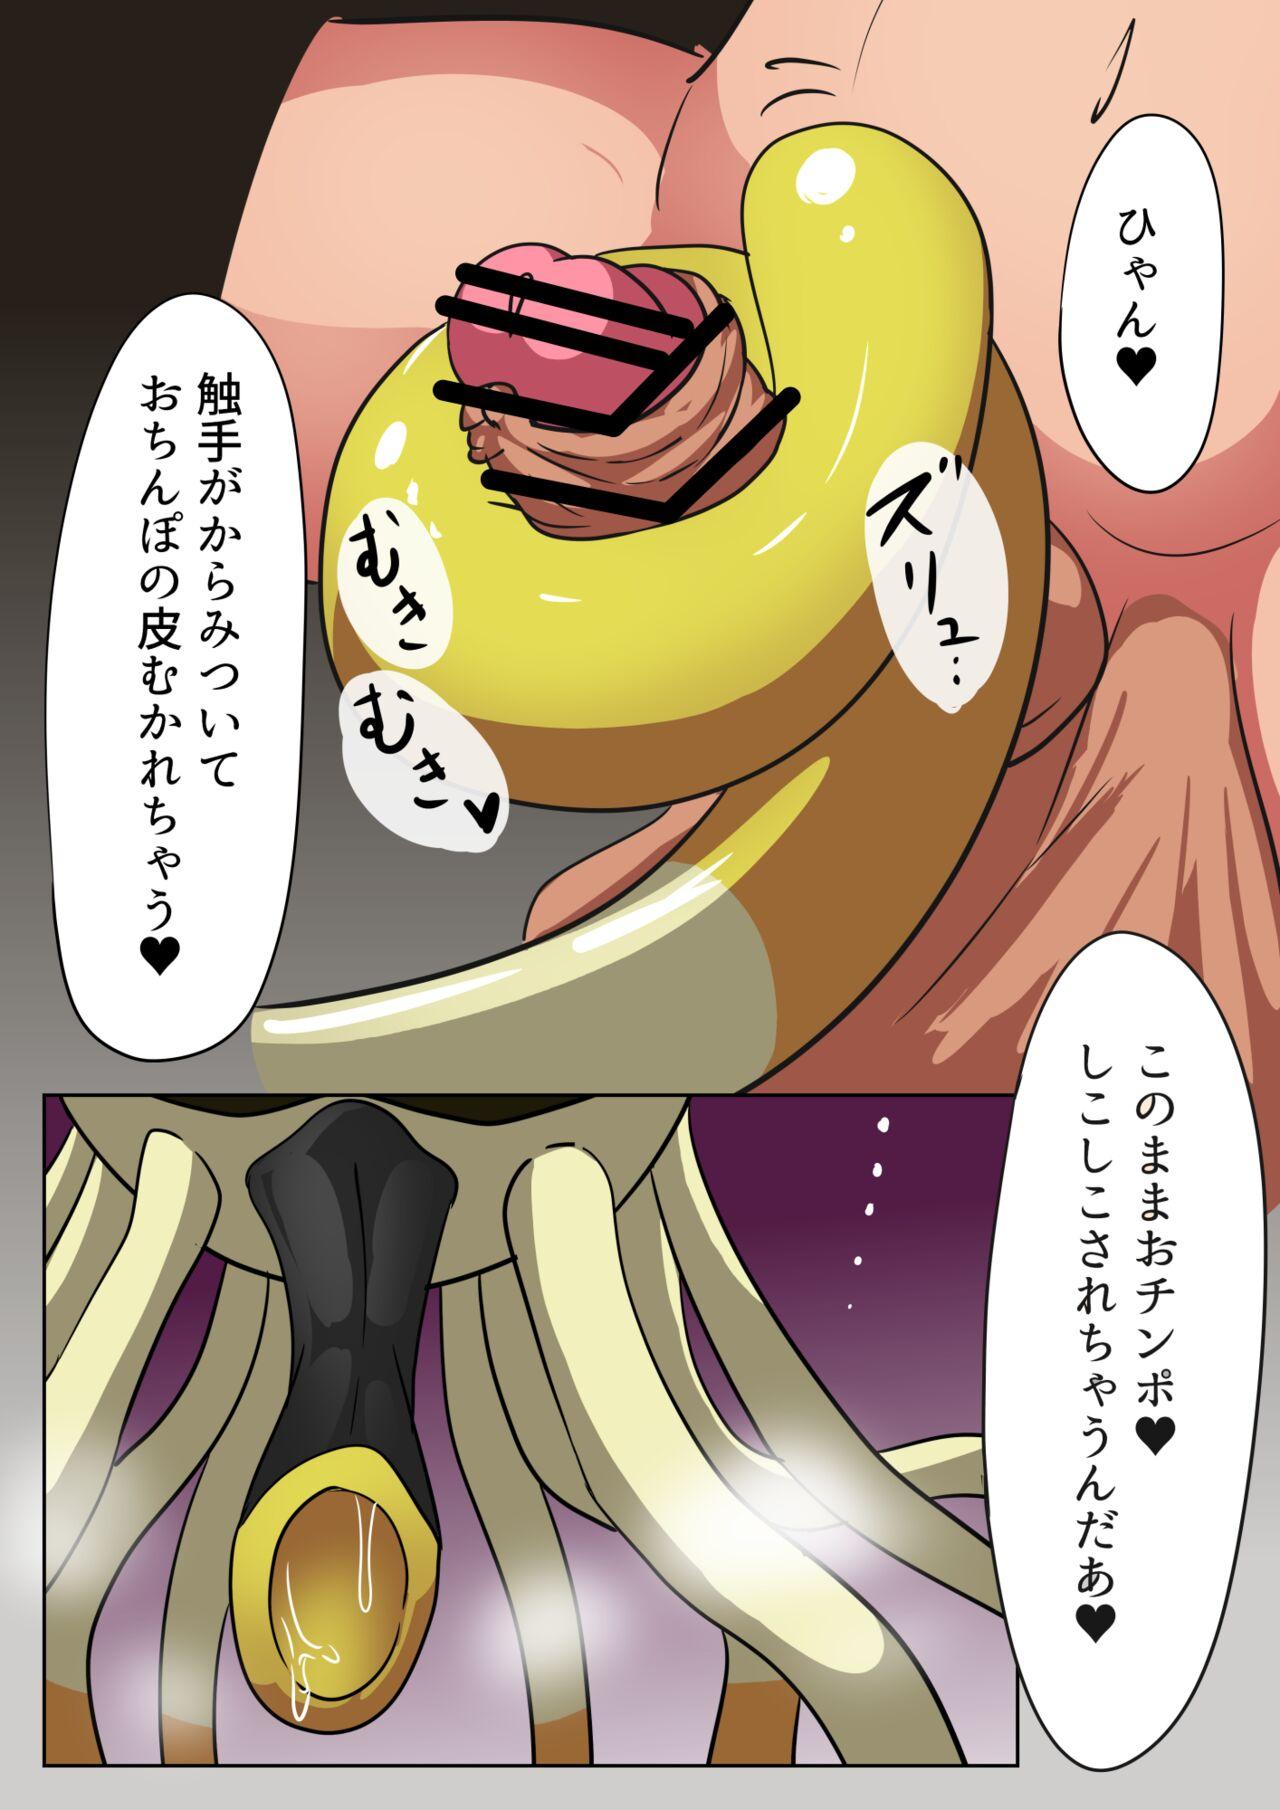 Bikini Futanari Aoi Shokushu Play Manga - Pokemon | pocket monsters Cei - Picture 2